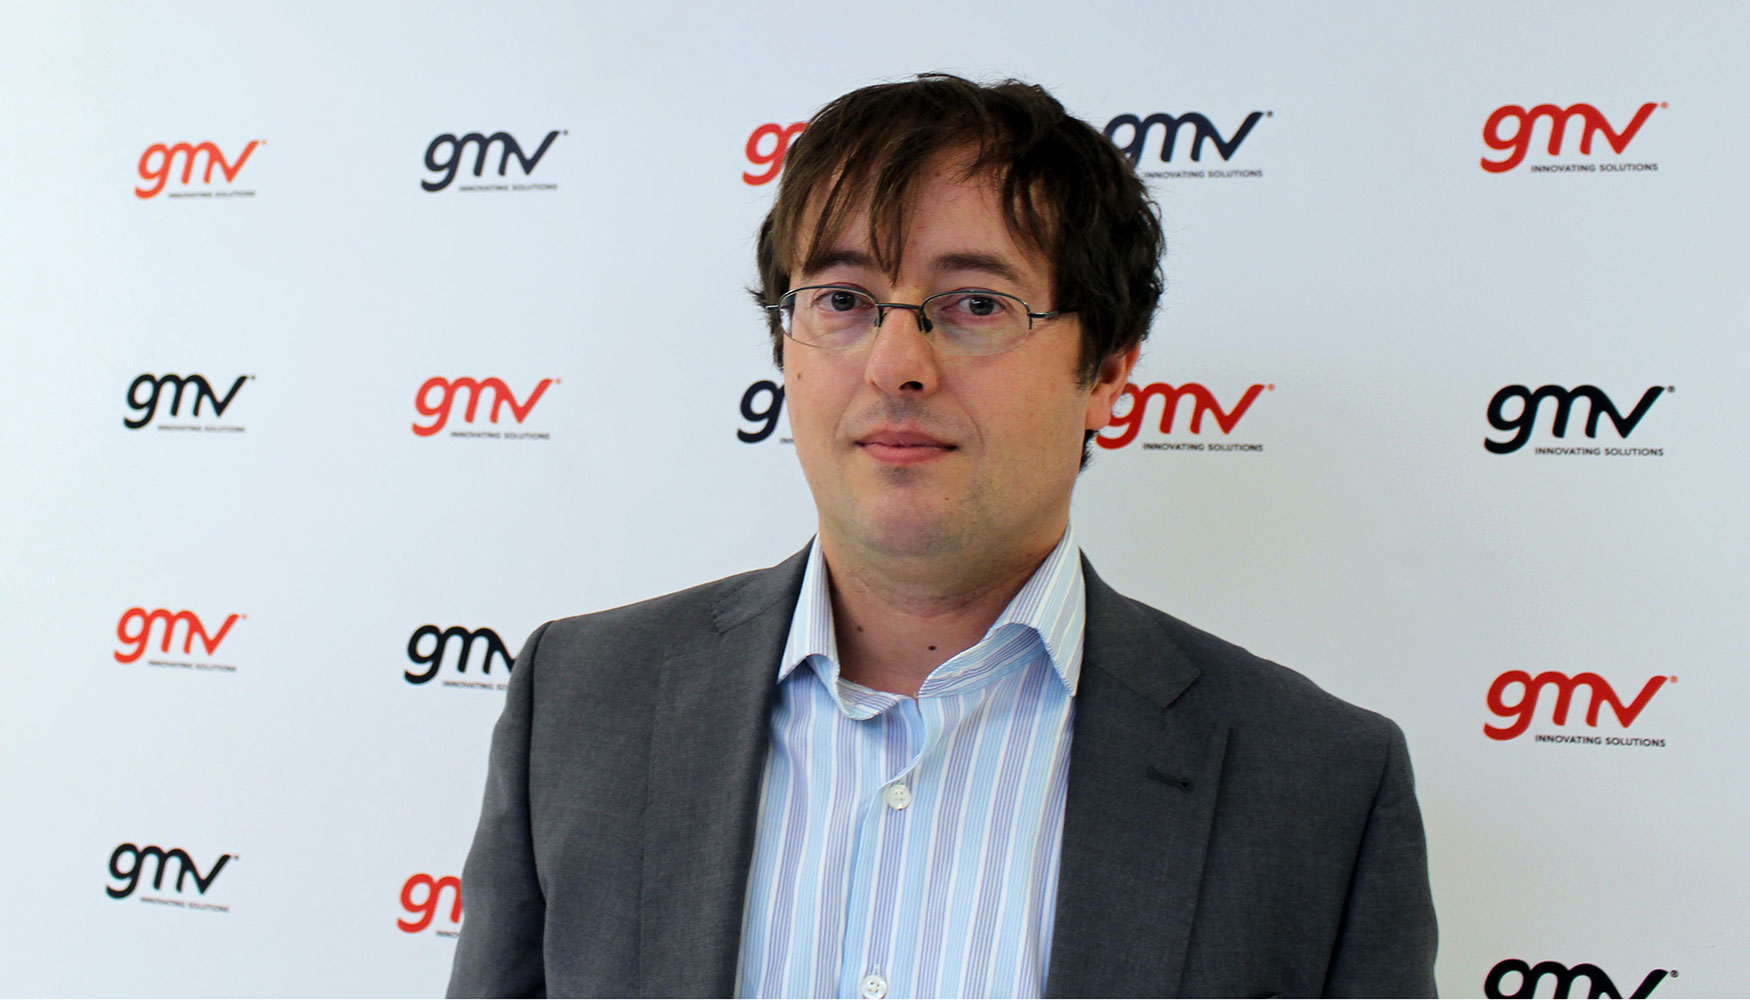 Antonio Cabaas, director de la Divisin de Ciberseguridad e Infraestructuras de GMV